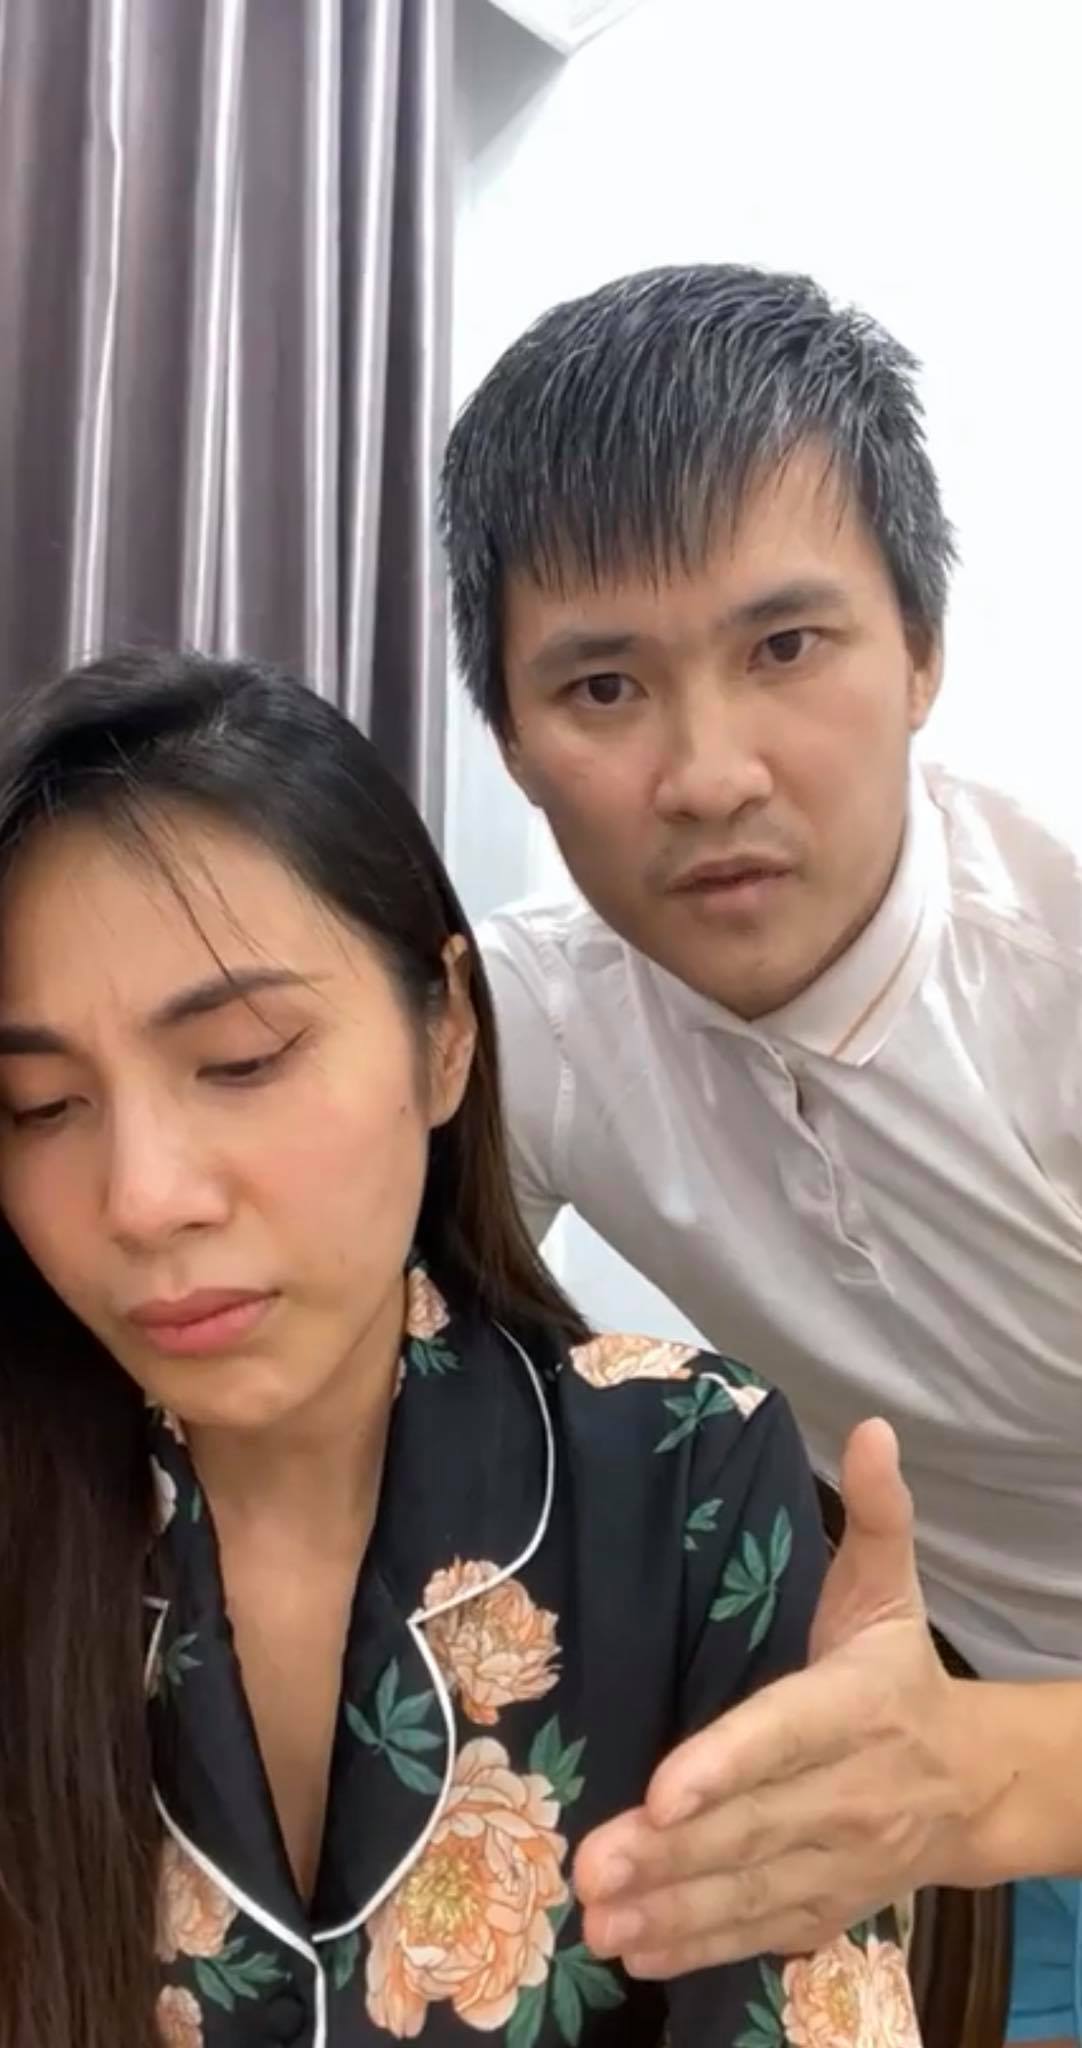 Livestream của Thuỷ Tiên có lượt xem kỷ lục, vượt xa bà Phương Hằng, Độ Mixi và cả Lộc Fuho